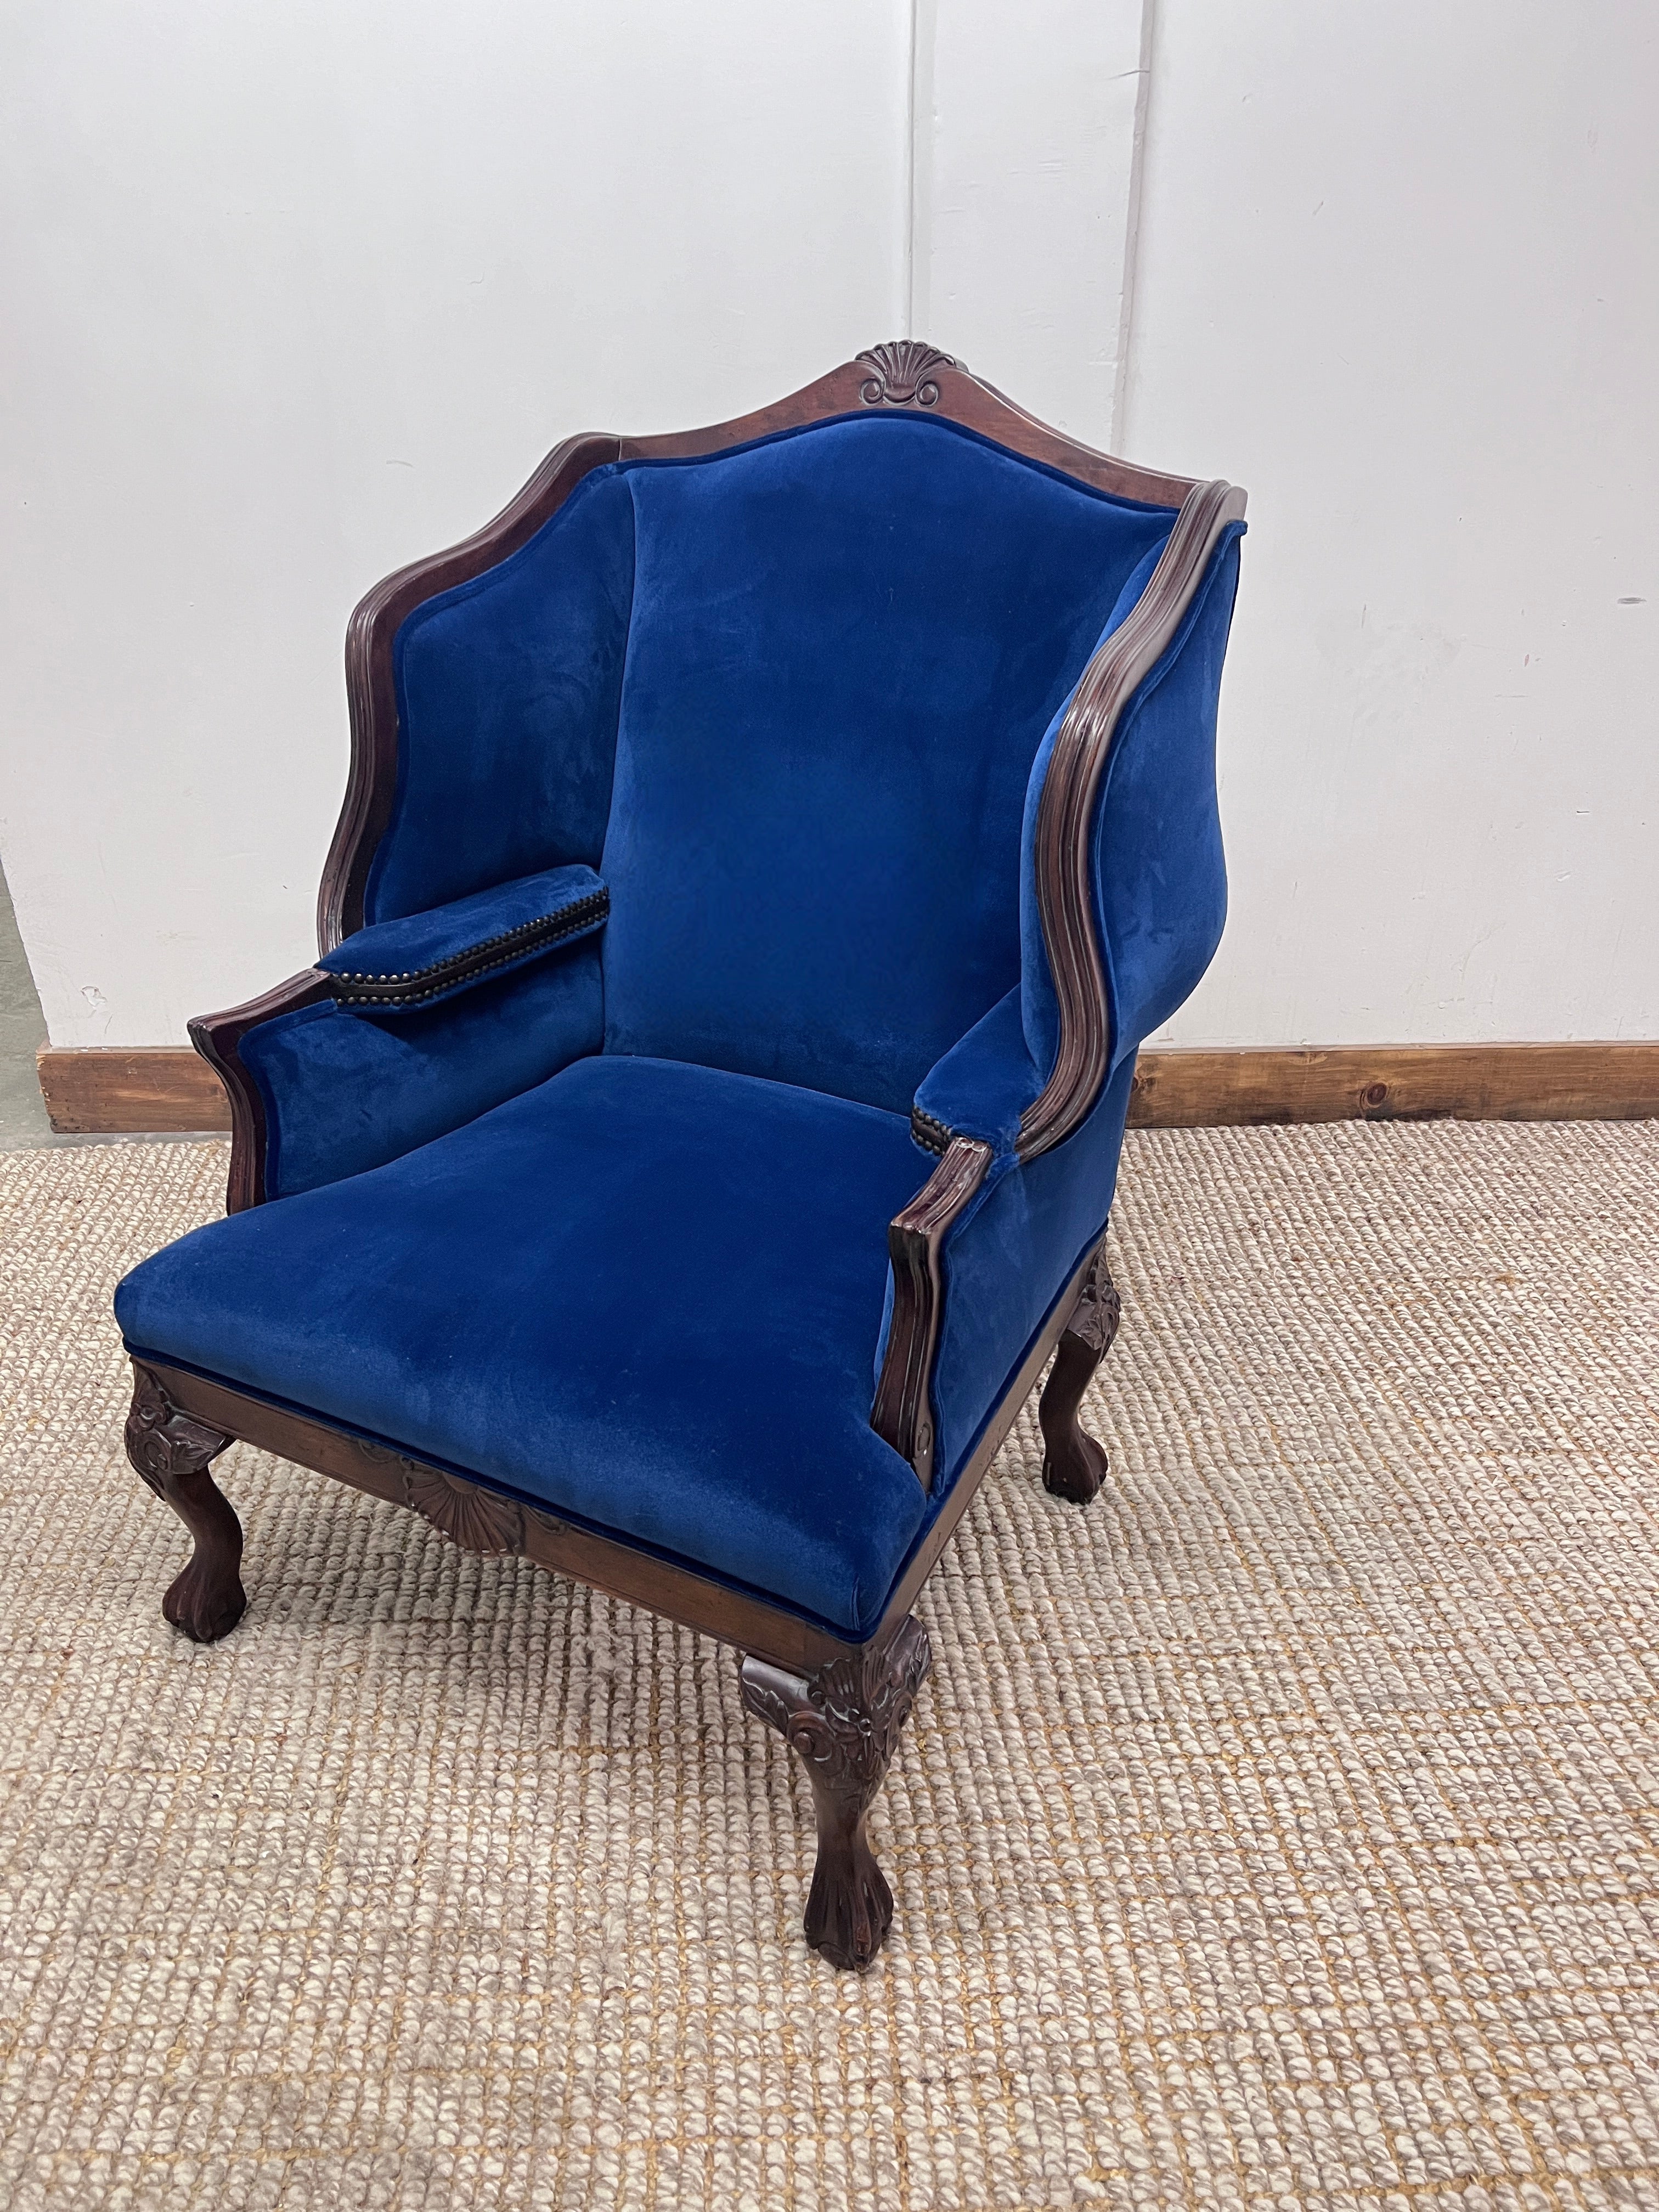 Ein außergewöhnlicher Wingback Chair mit großen geschwungenen Flügeln und Armlehnen im Inneren des mit Bronze-Nagelköpfen verzierten Rahmens.  Der Stuhl ist im französischen Barock-Regence-Stil gehalten, obwohl es sich um einen Stuhl des frühen 20.